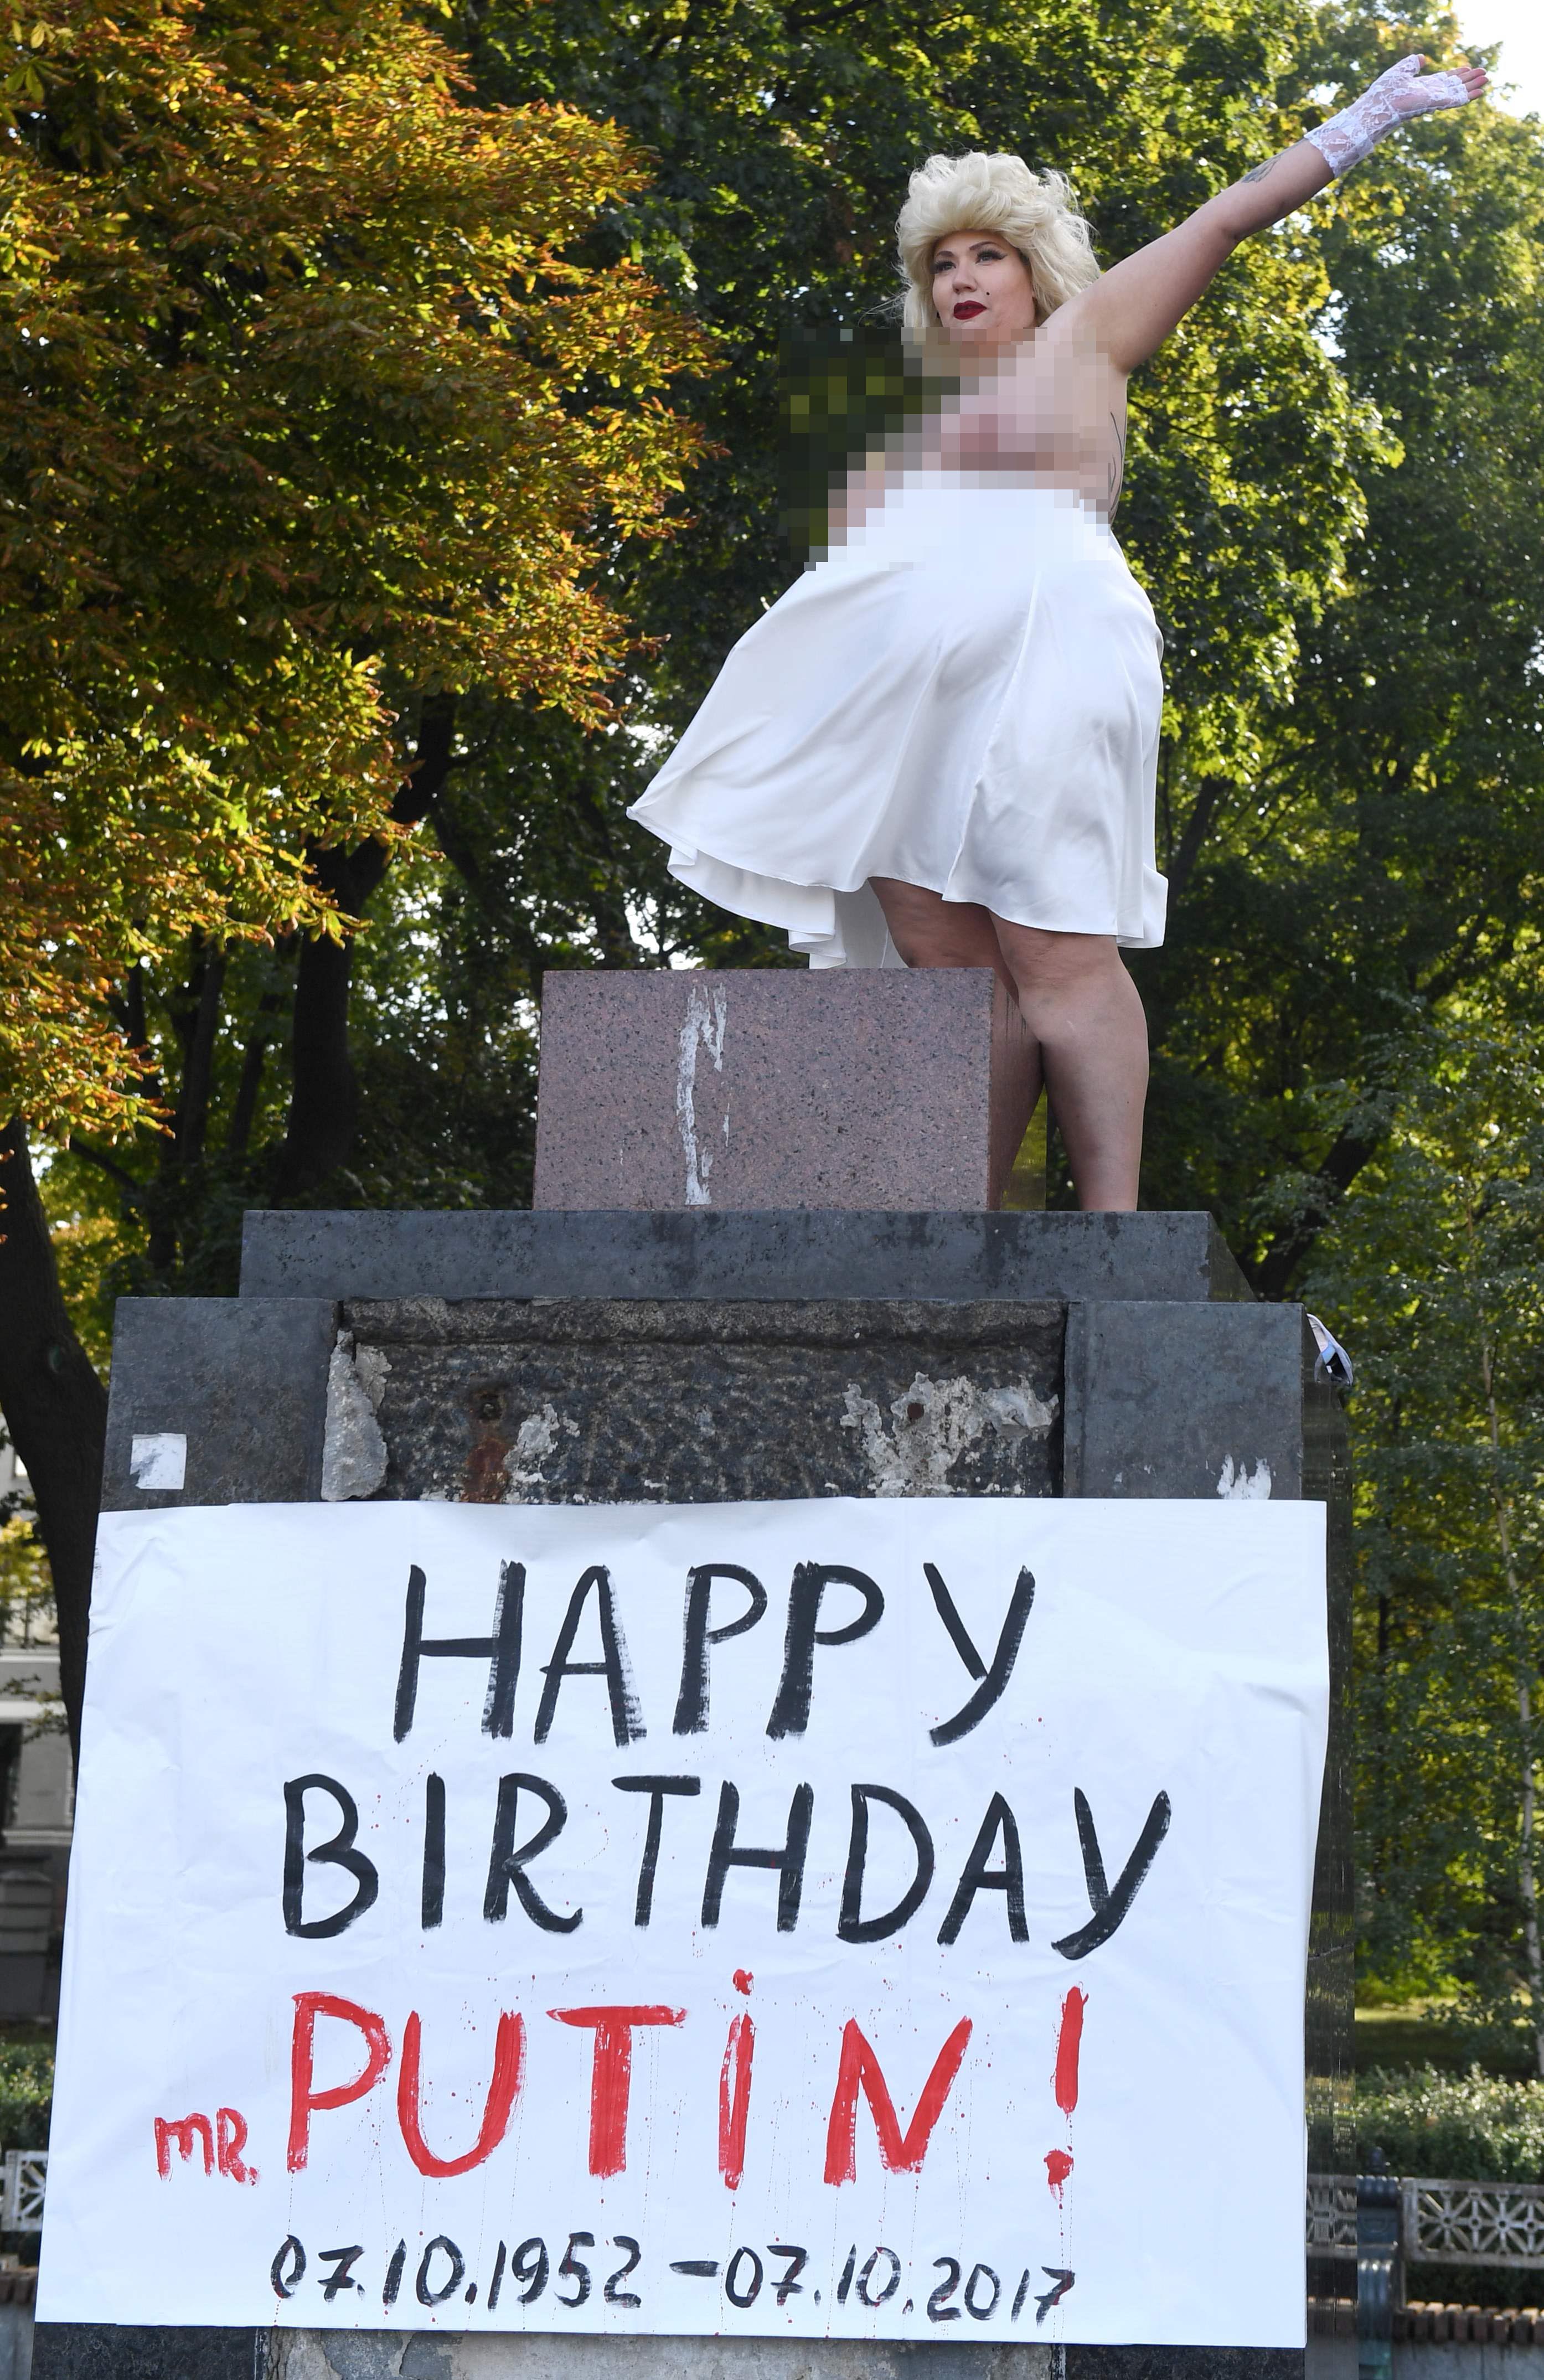 أوكرانية تهنئ الرئيس الروسى بعيد ميلاده بالرقص عارية الصدر فى كييف